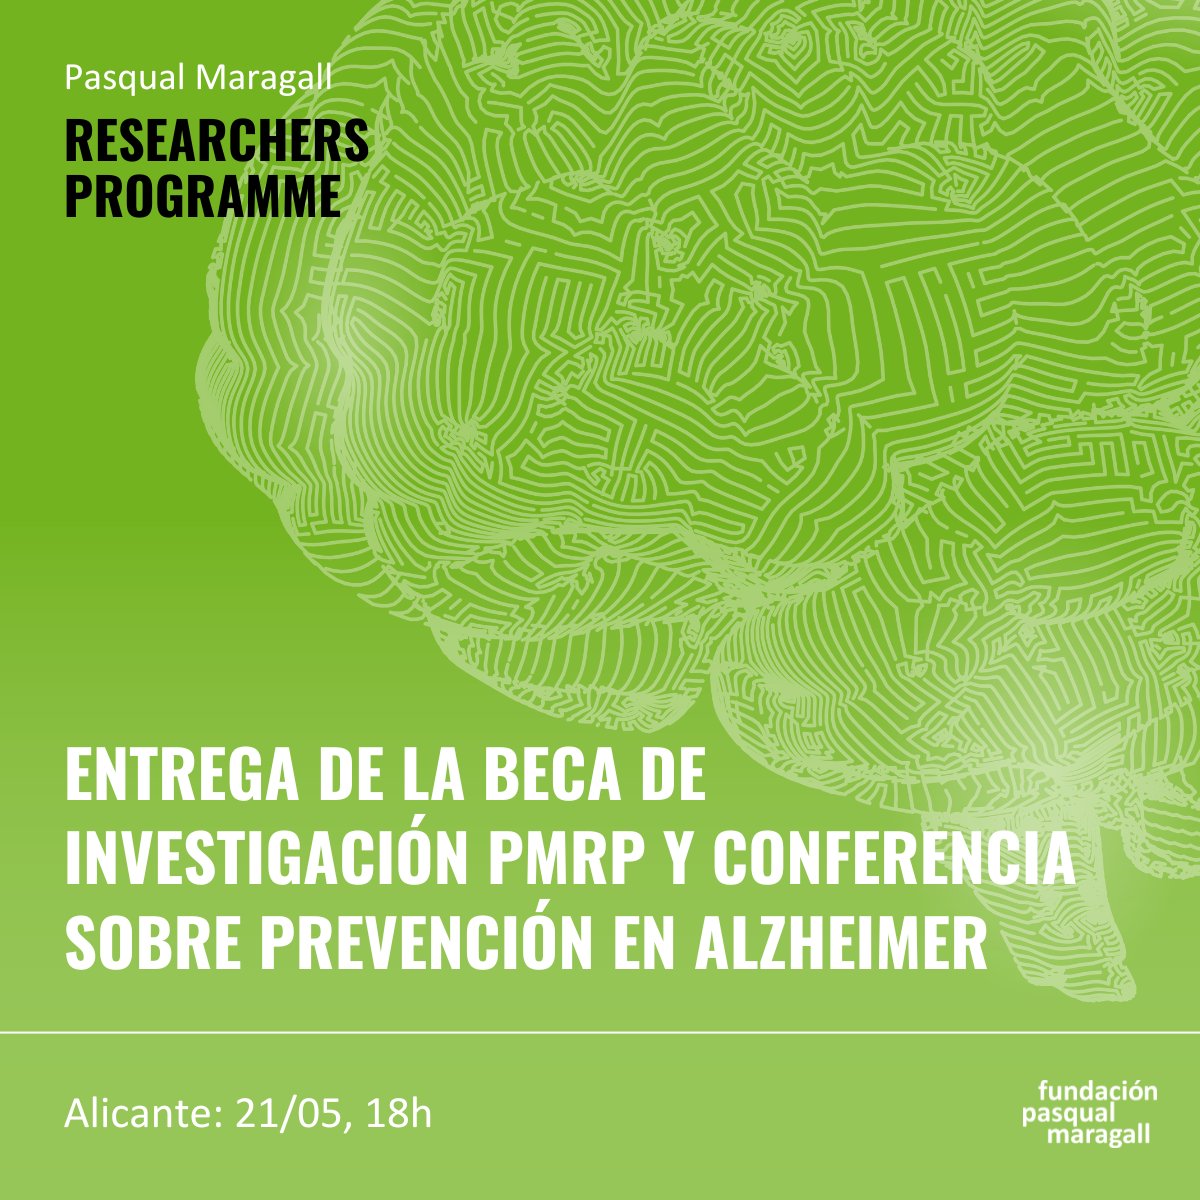 Te esperamos hoy a las 18h en el Palacio de Congresos de Alicante para la entrega de la beca Pasqual Maragall Researchers Programme 🔬 y nuestra charla 'Cuando te cuidas, el Alzheimer da un paso atrás' 🍏🏃‍♀️💤. ¡Todavía estás a tiempo de apuntarte! 👉 fpmaragall.org/alicante